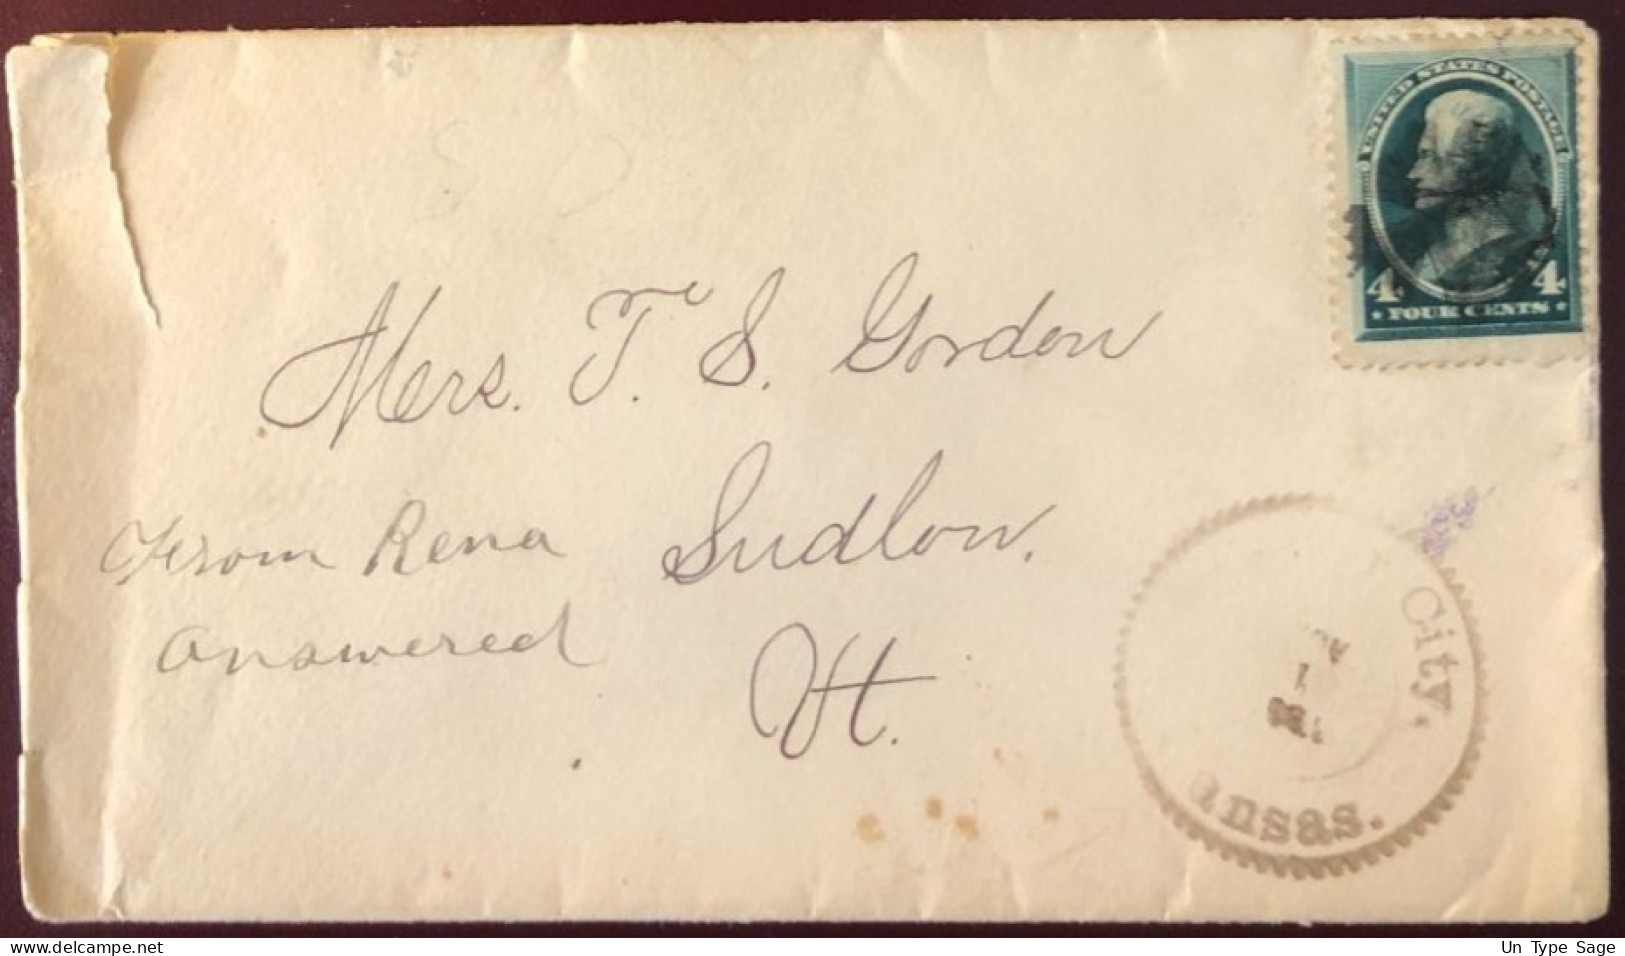 Etats-Unis, N°61 Sur Enveloppe De Kansas City 1885 - 2 Photos - (B1351) - Marcophilie